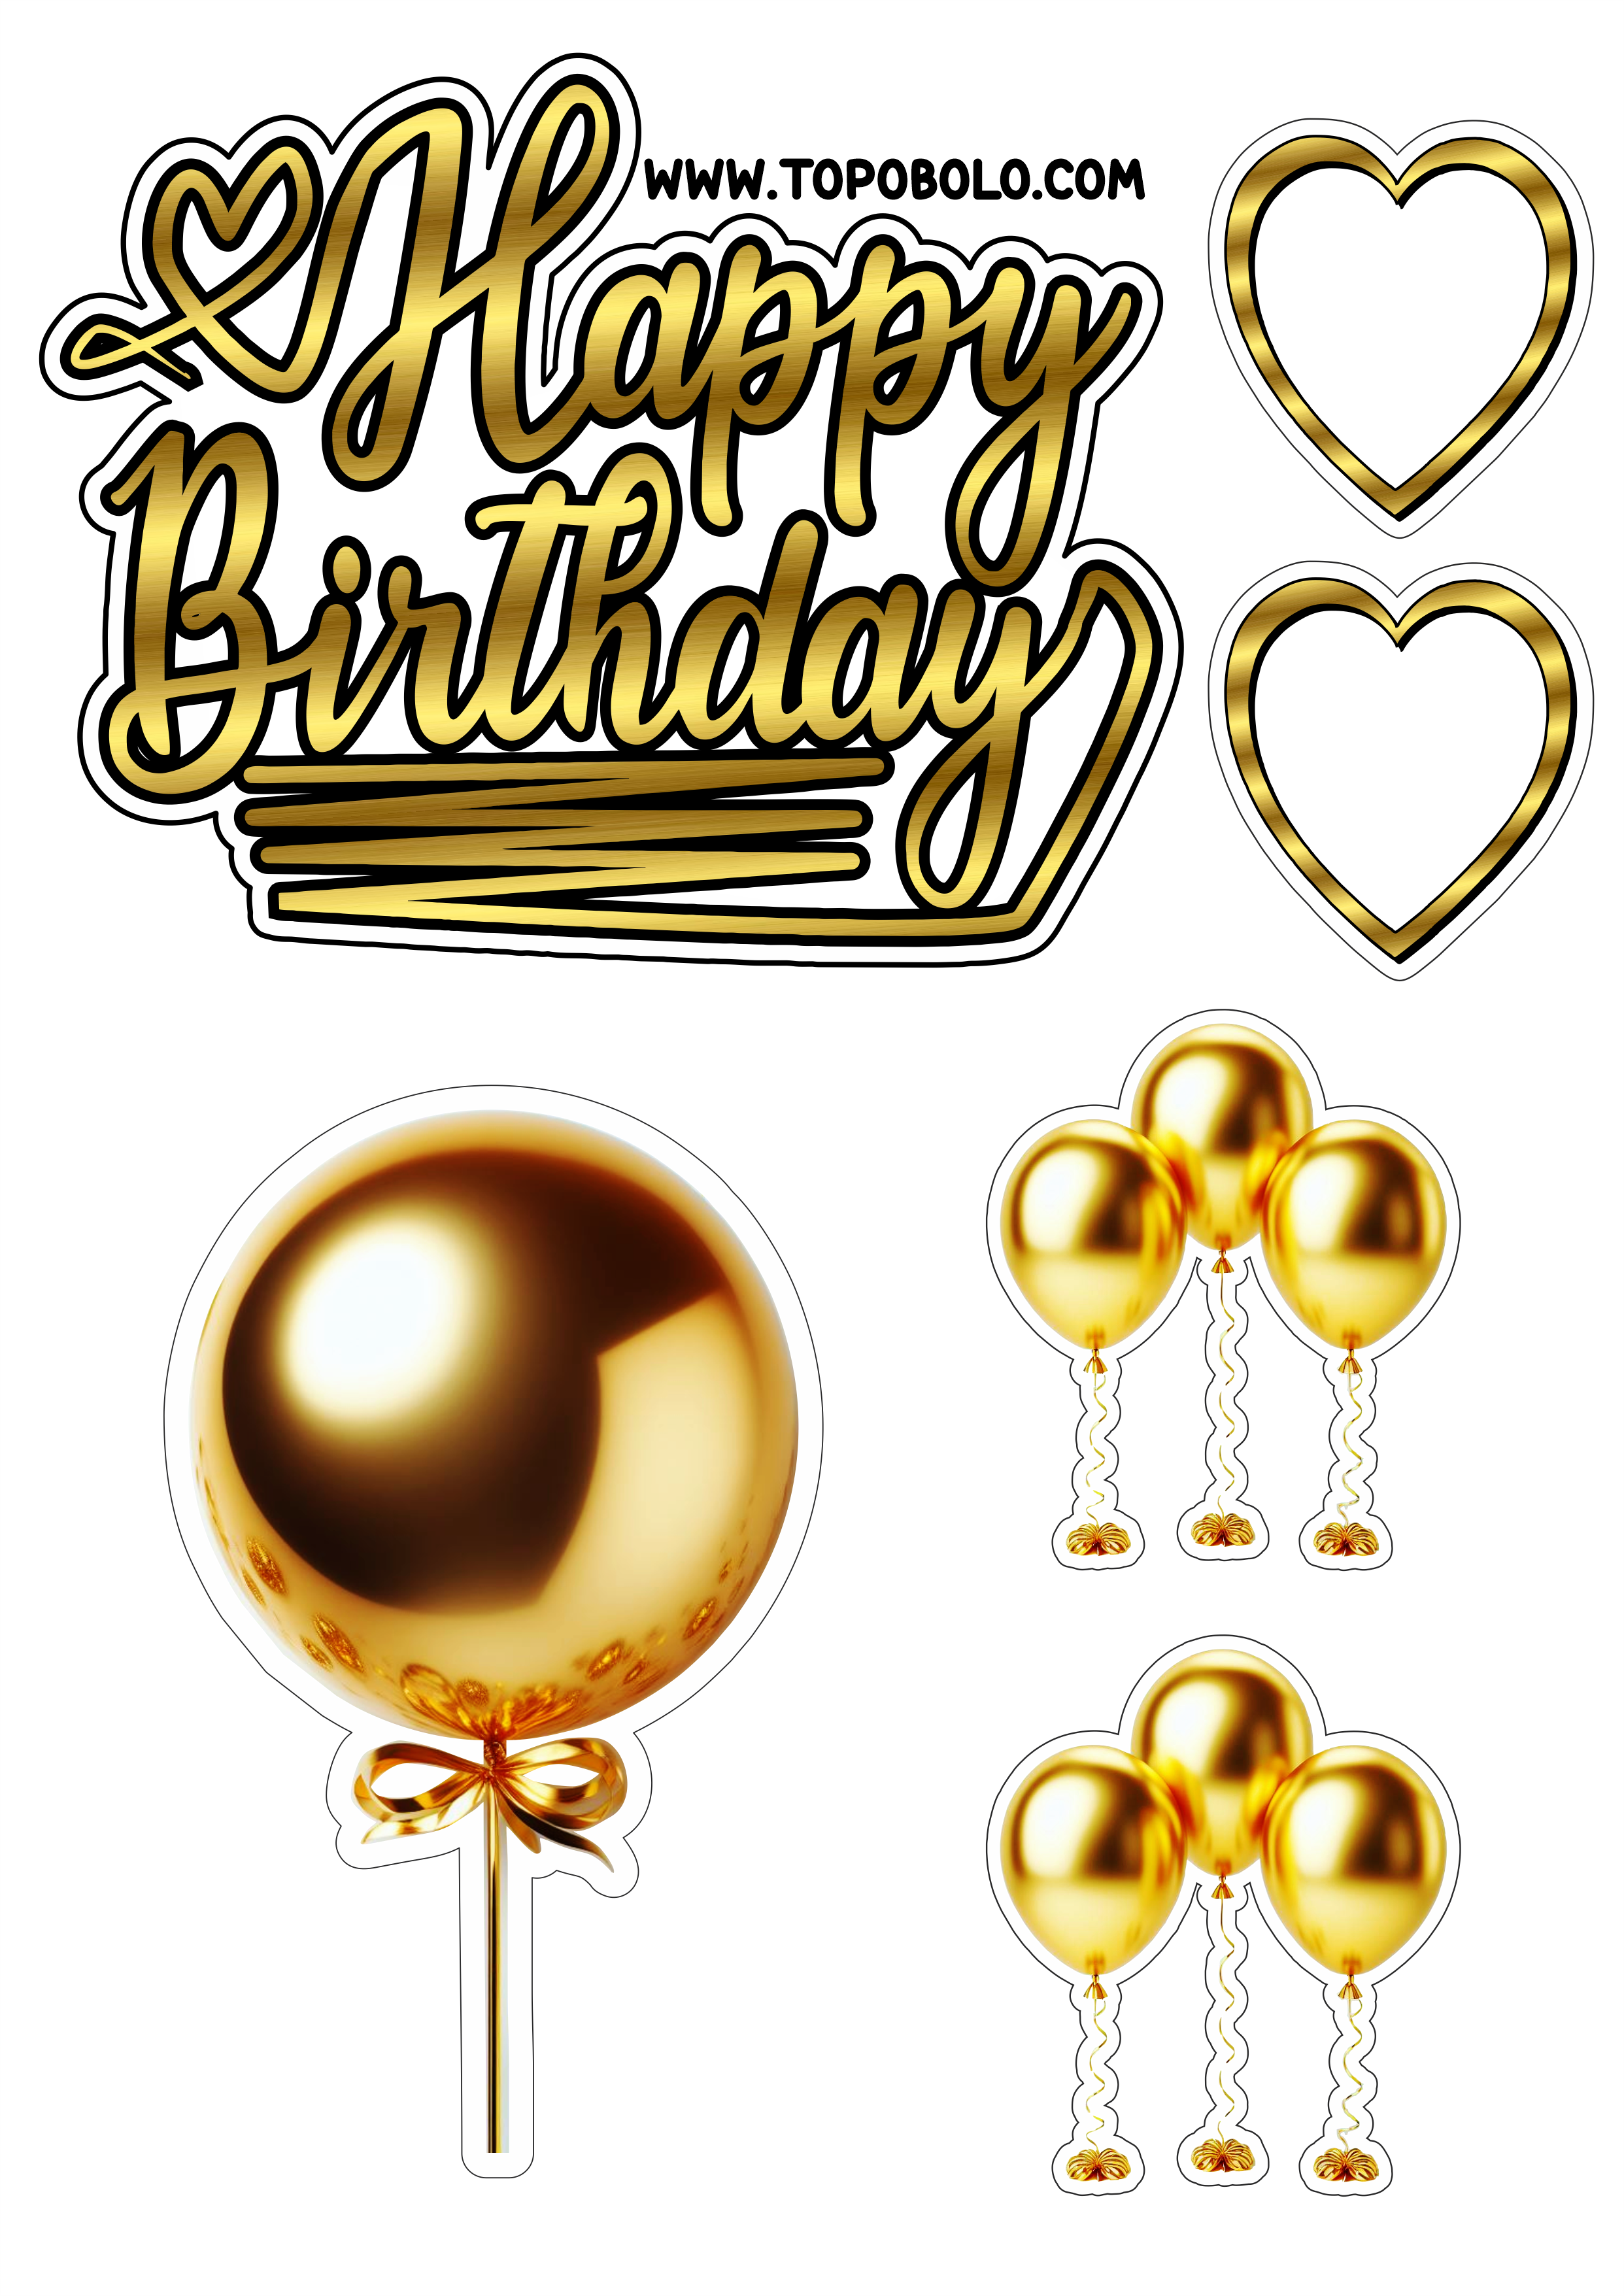 Topo de bolo para imprimir Happy Birthday aniversário dourado com corações e balões artigos de confeitaria png